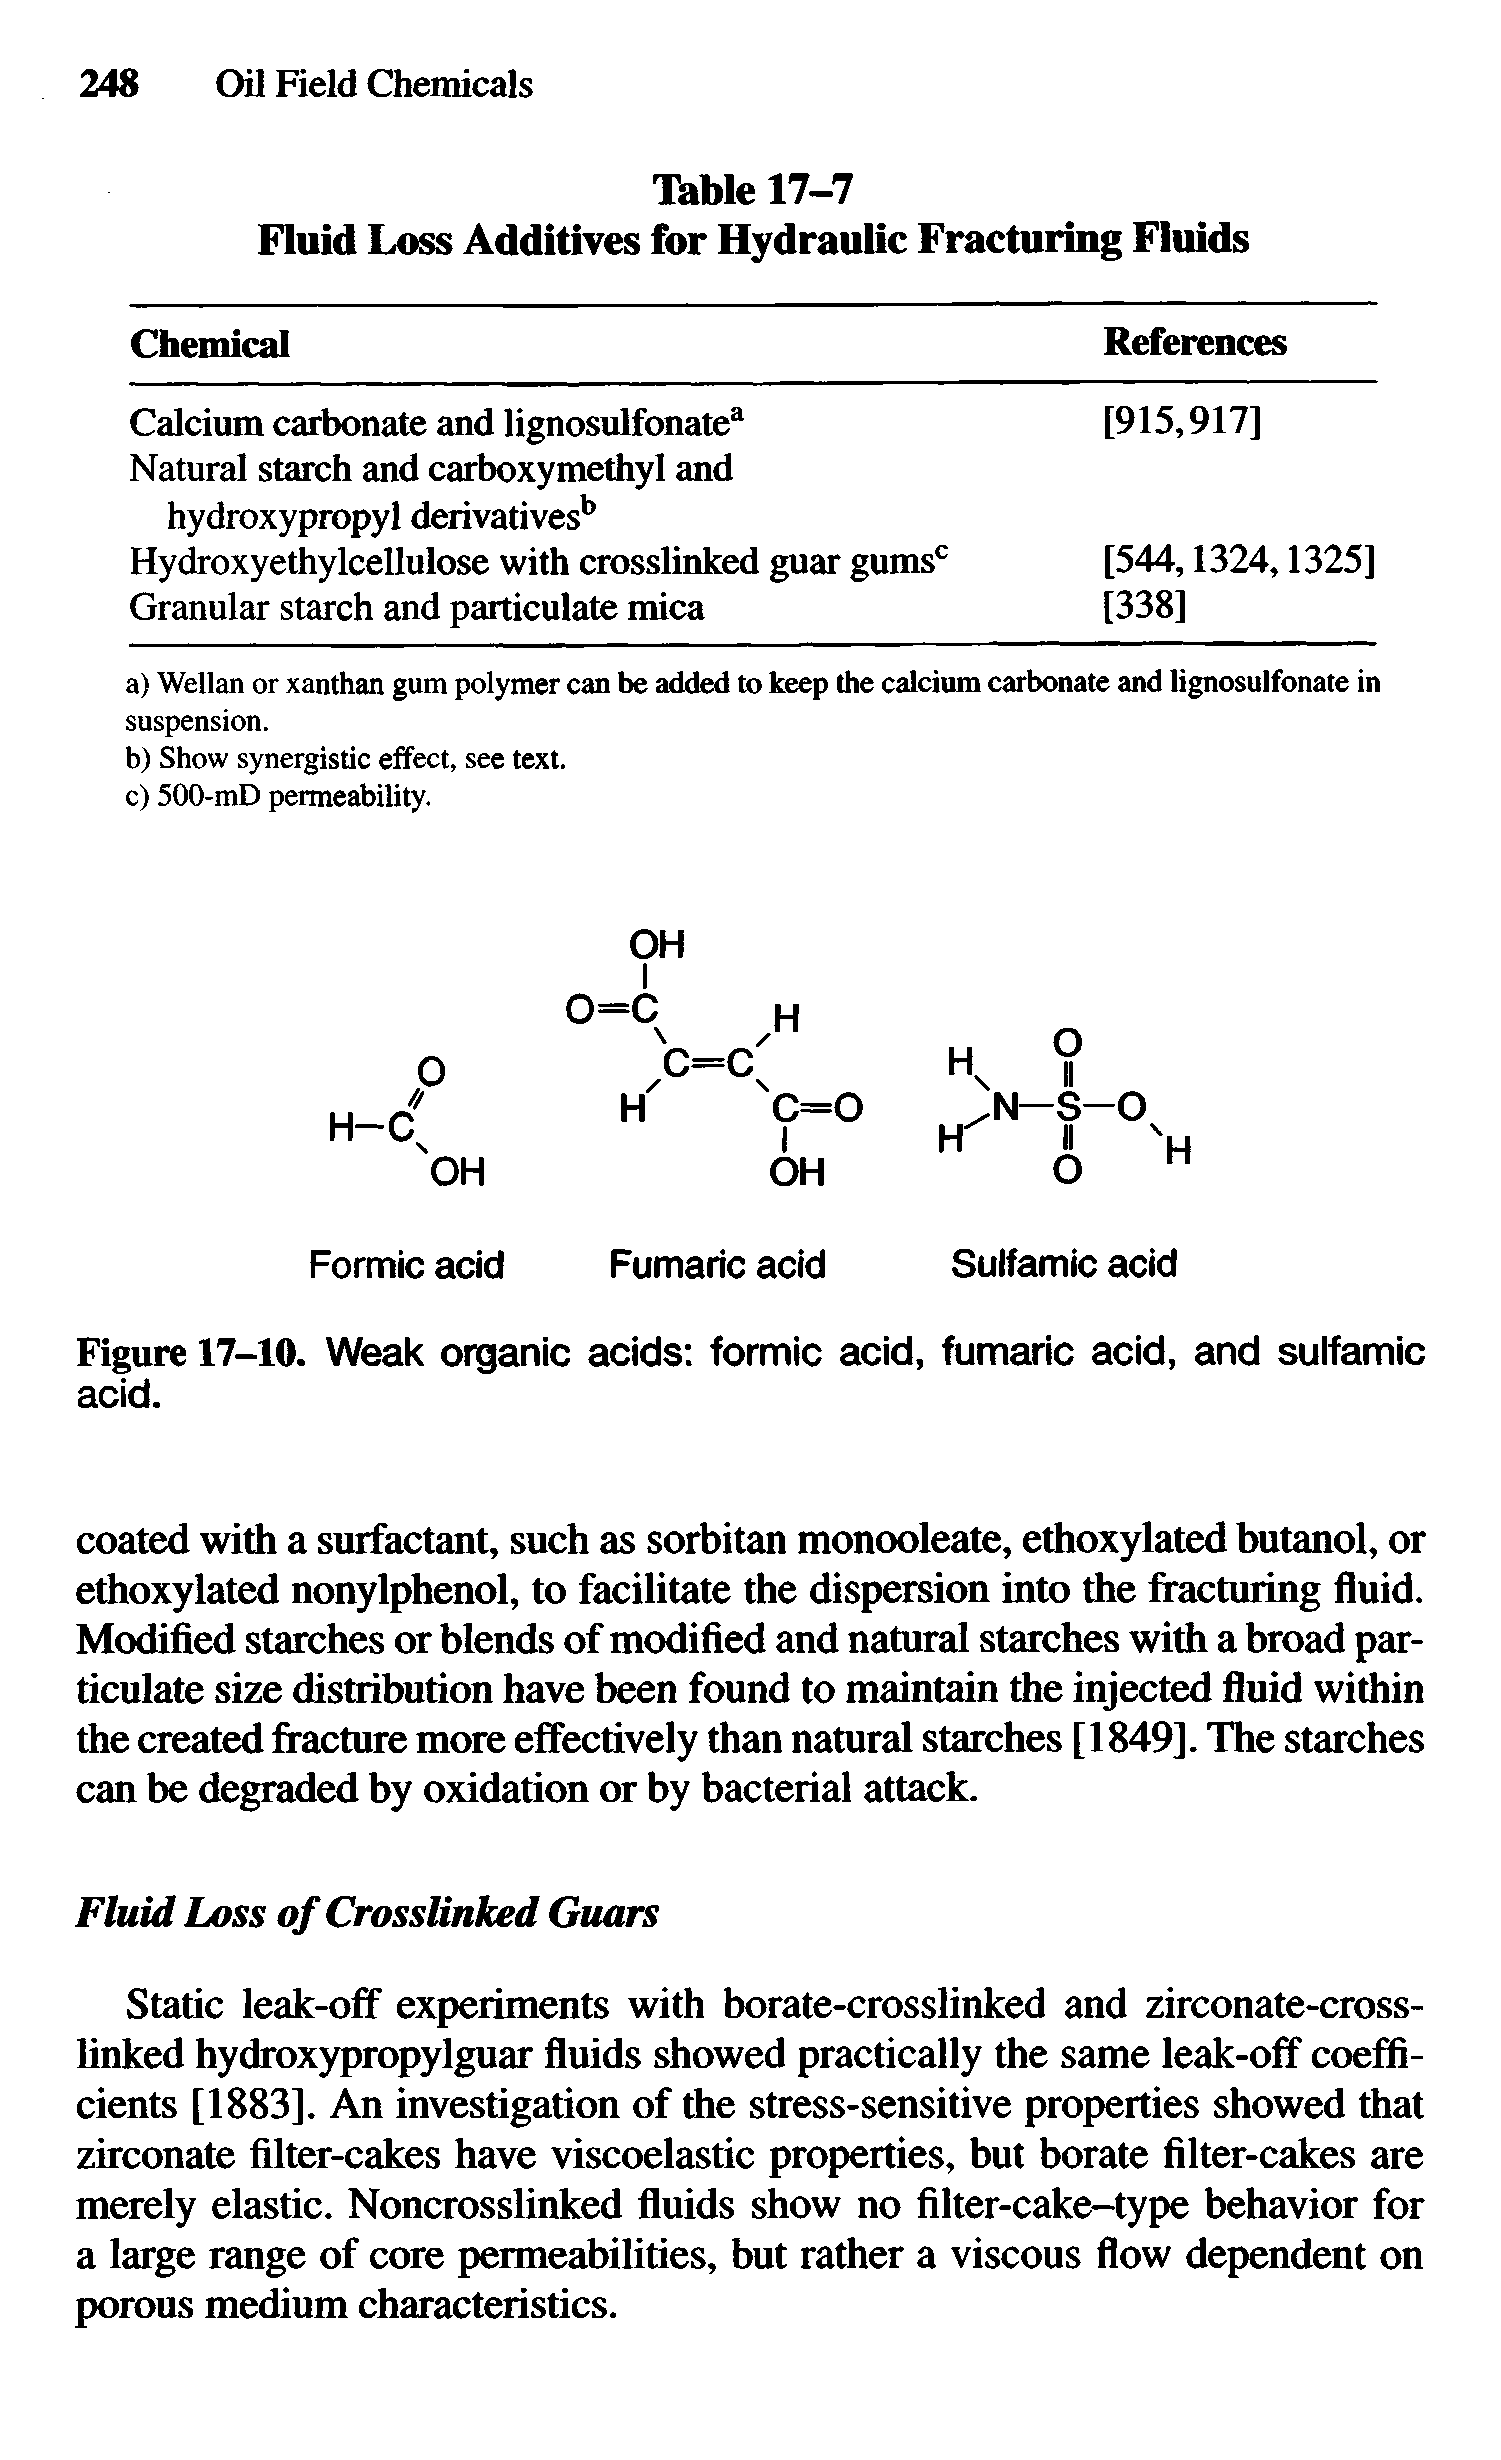 Figure 17-10. Weak organic acids formic acid, fumaric acid, and sulfamic acid.